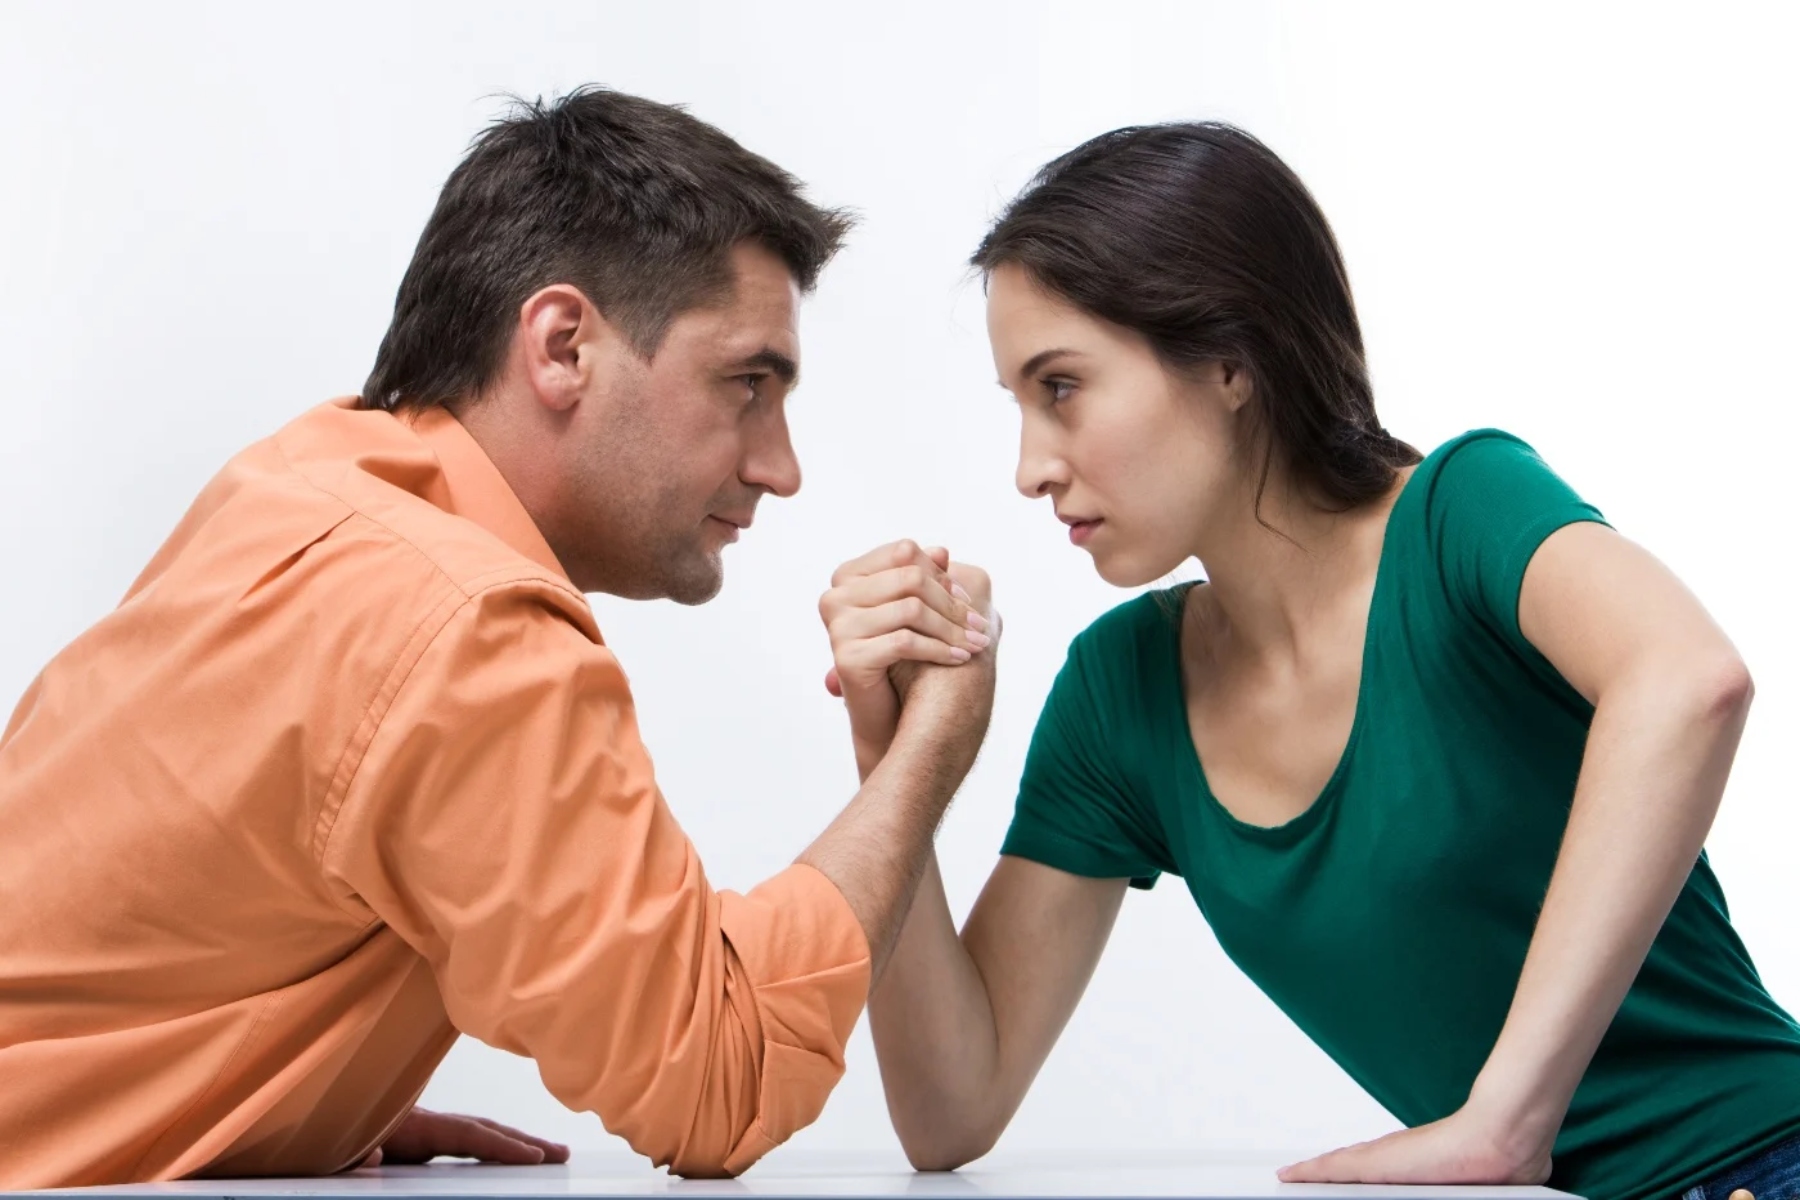 Σχέσεις δυσκολίες: Γιατί έχουν γίνει τόσο δύσκολες οι σχέσεις στις μέρες μας;